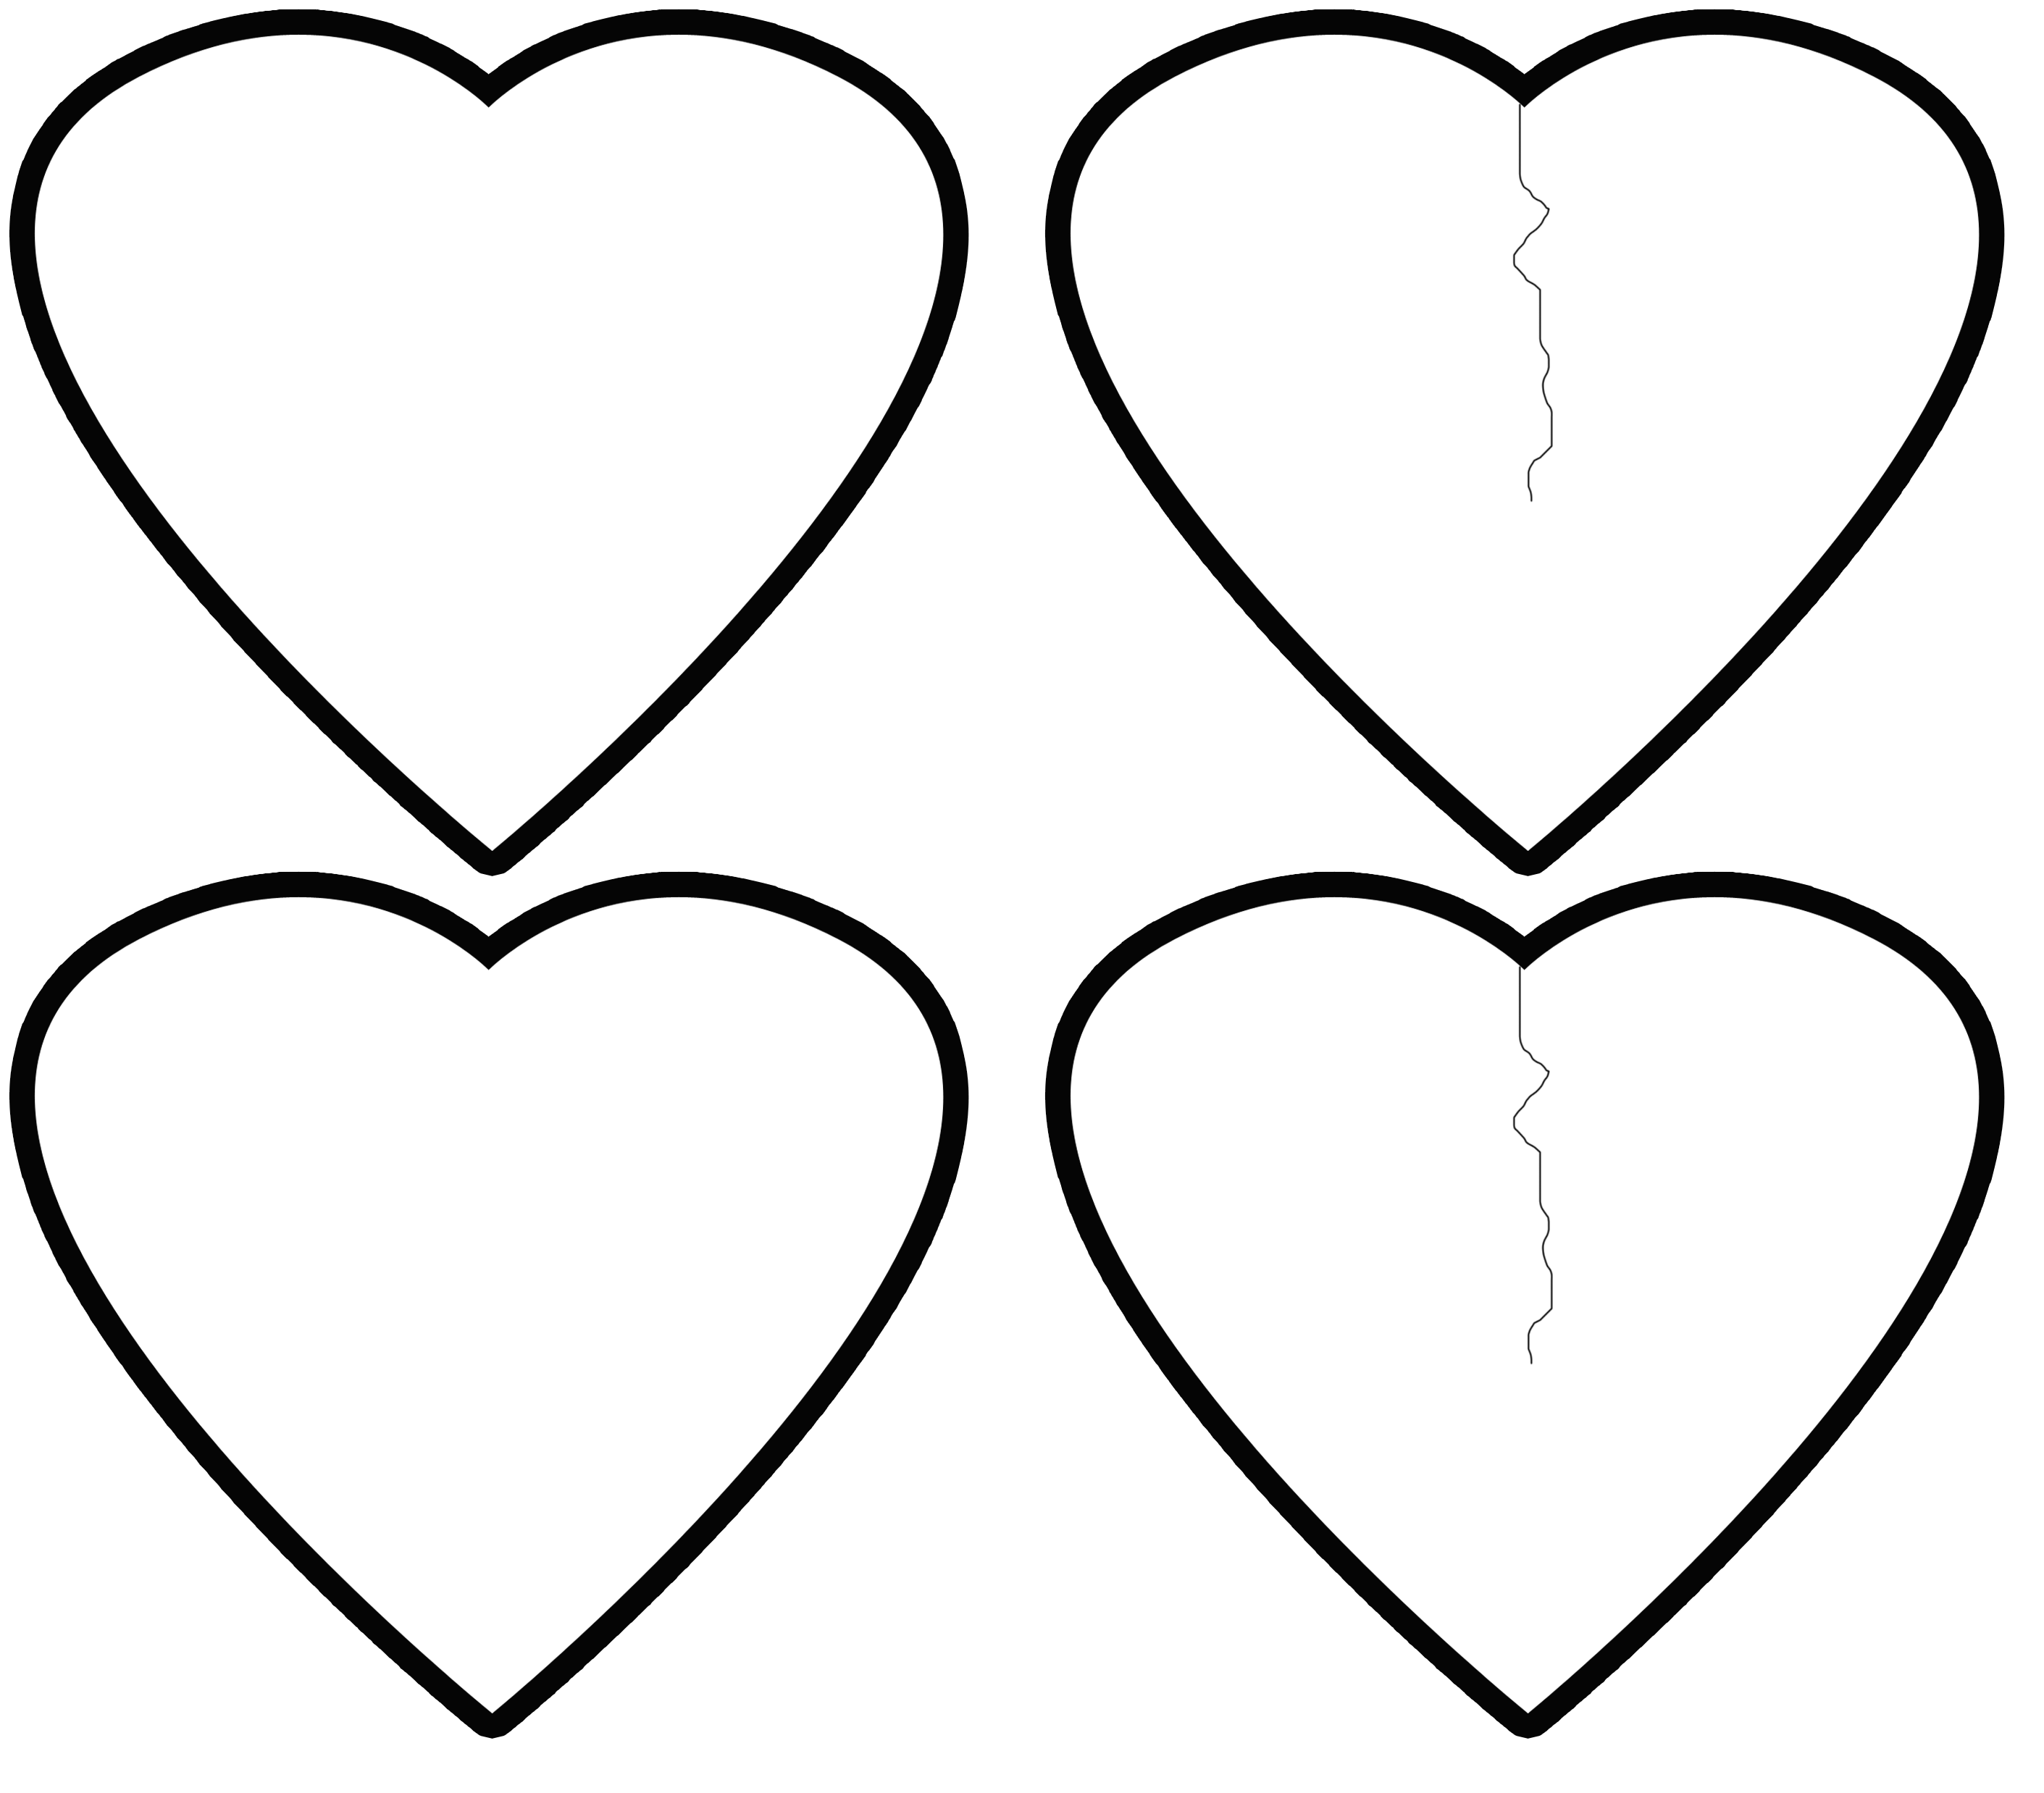 Шаблон сердечко для вырезания из бумаги распечатать